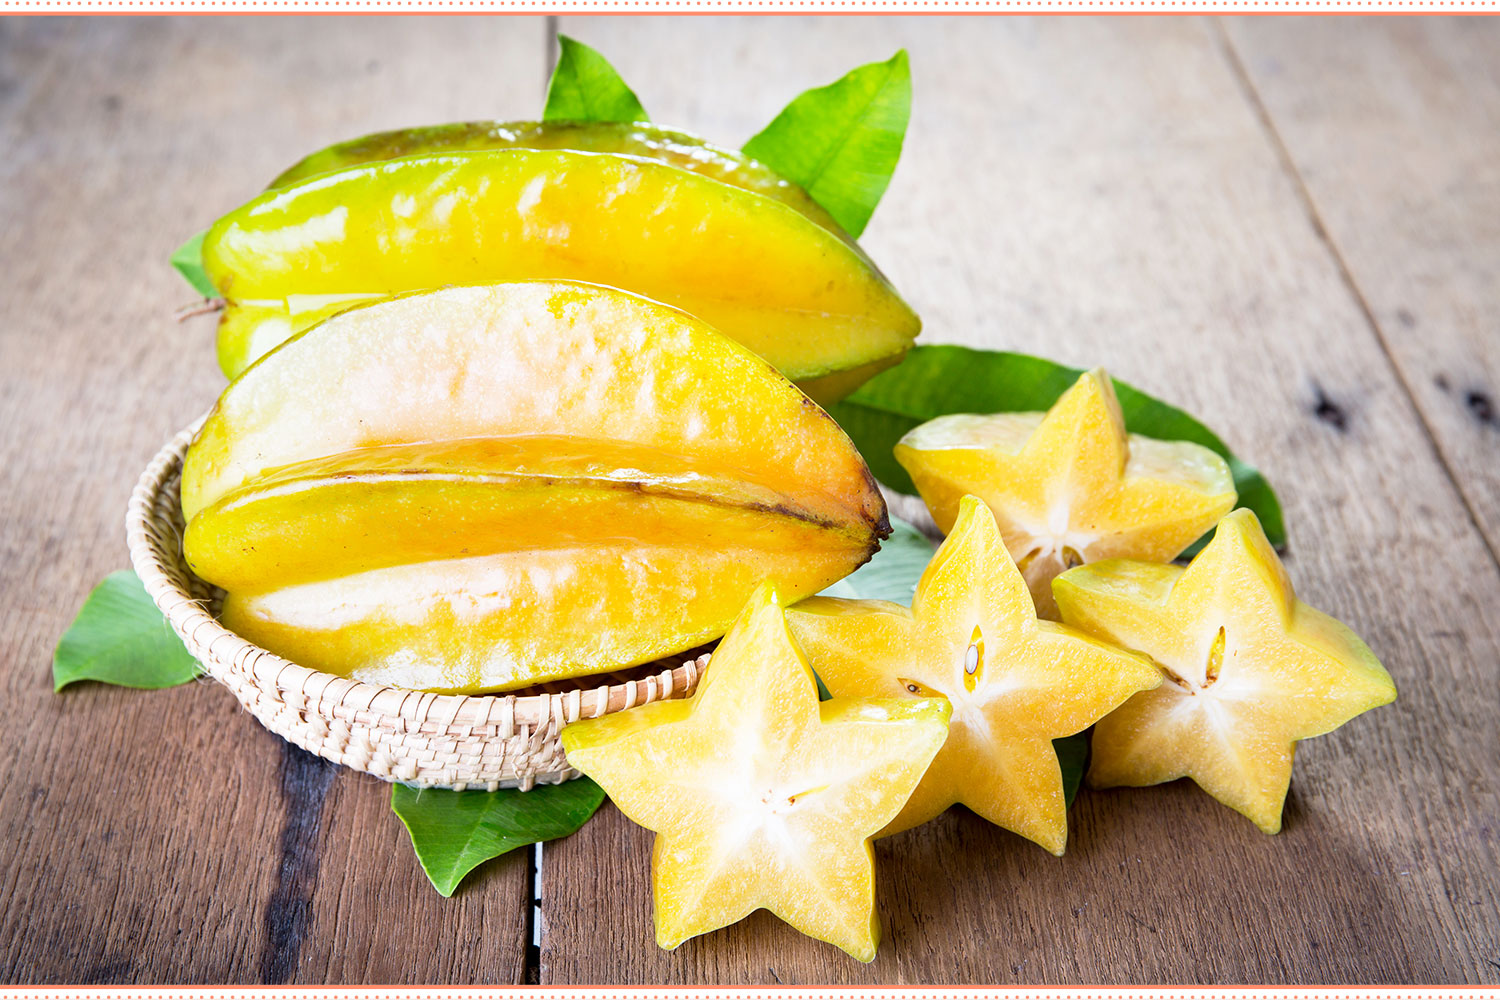 https://www.berries.com/blog/wp-content/uploads/2019/05/types-of-fruit-starfruit.jpg